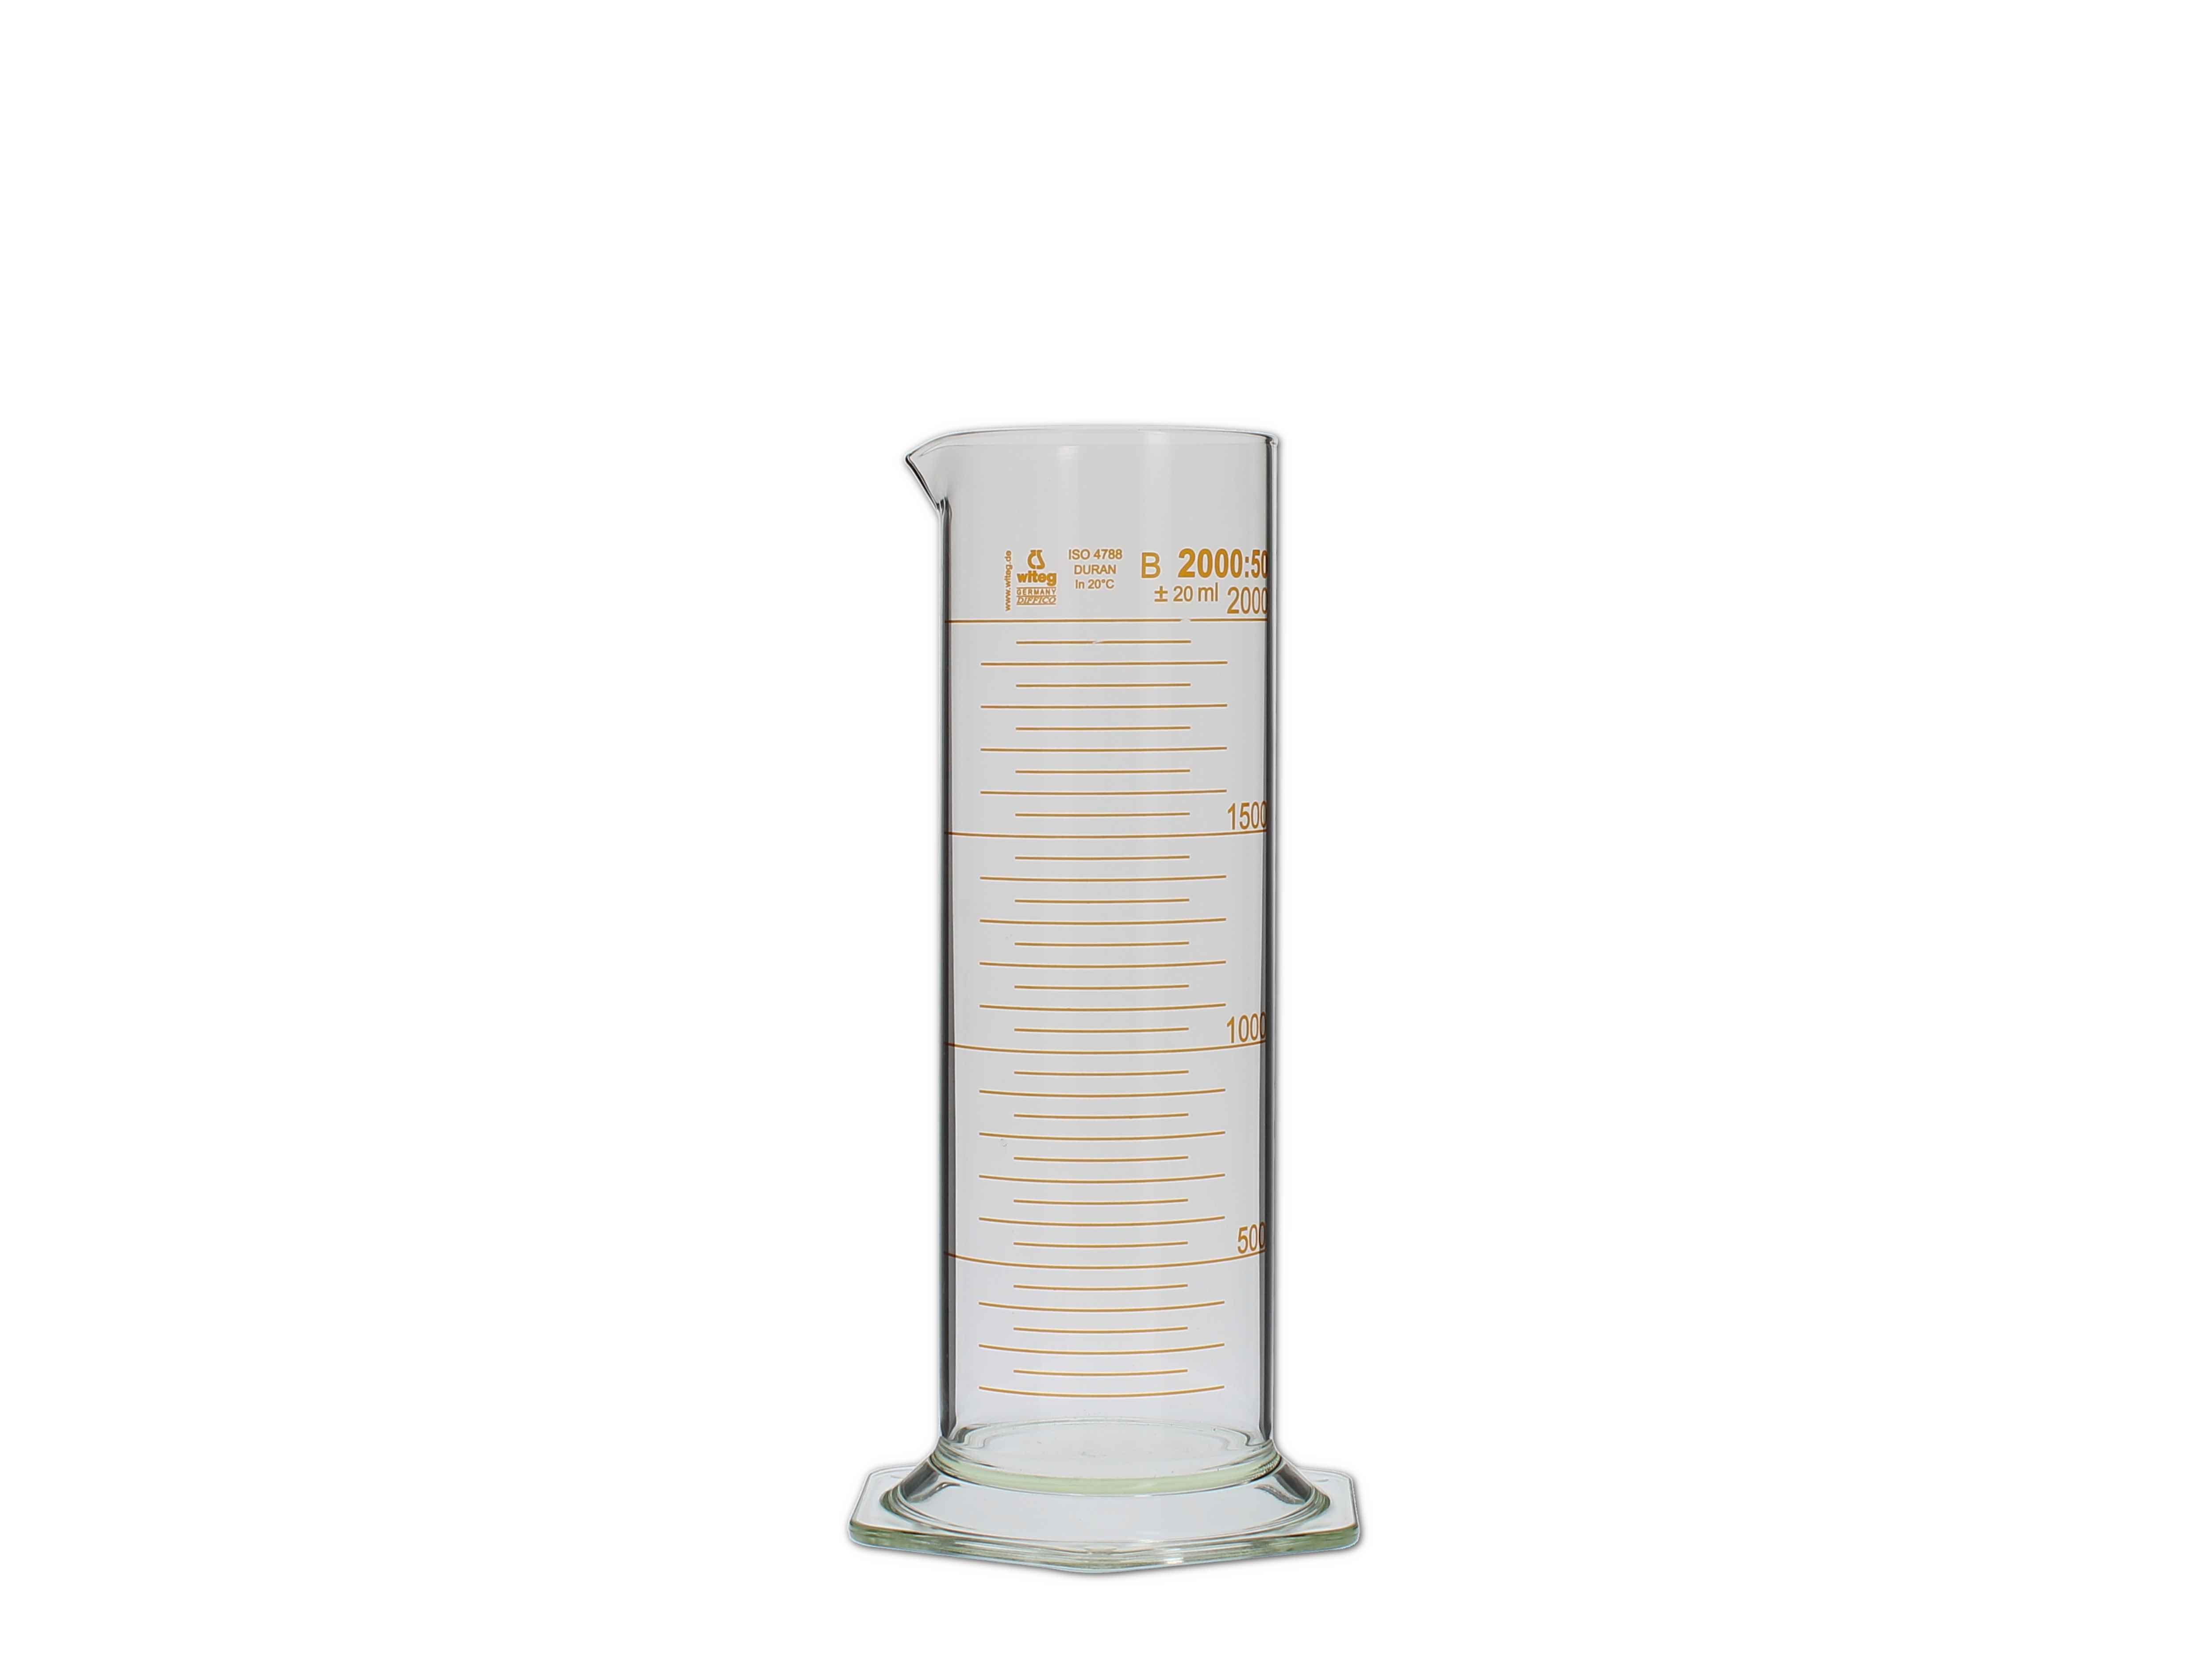    Messzylinder, Glas, graduiert - 2000ml (niedere Form)